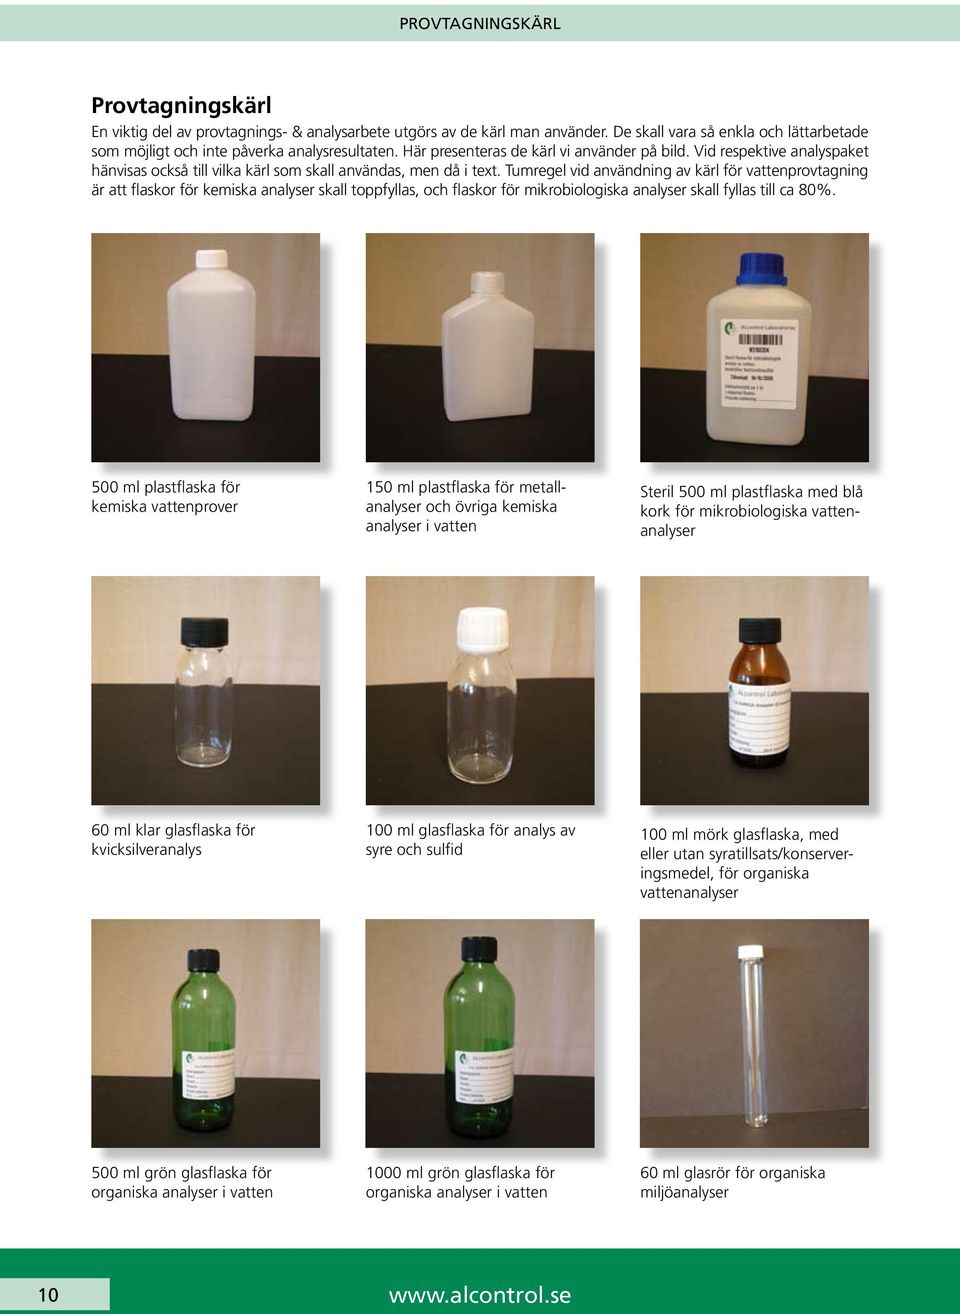 Tumregel vid användning av kärl för vattenprovtagning är att flaskor för kemiska analyser skall toppfyllas, och flaskor för mikrobiologiska analyser skall fyllas till ca 80%.